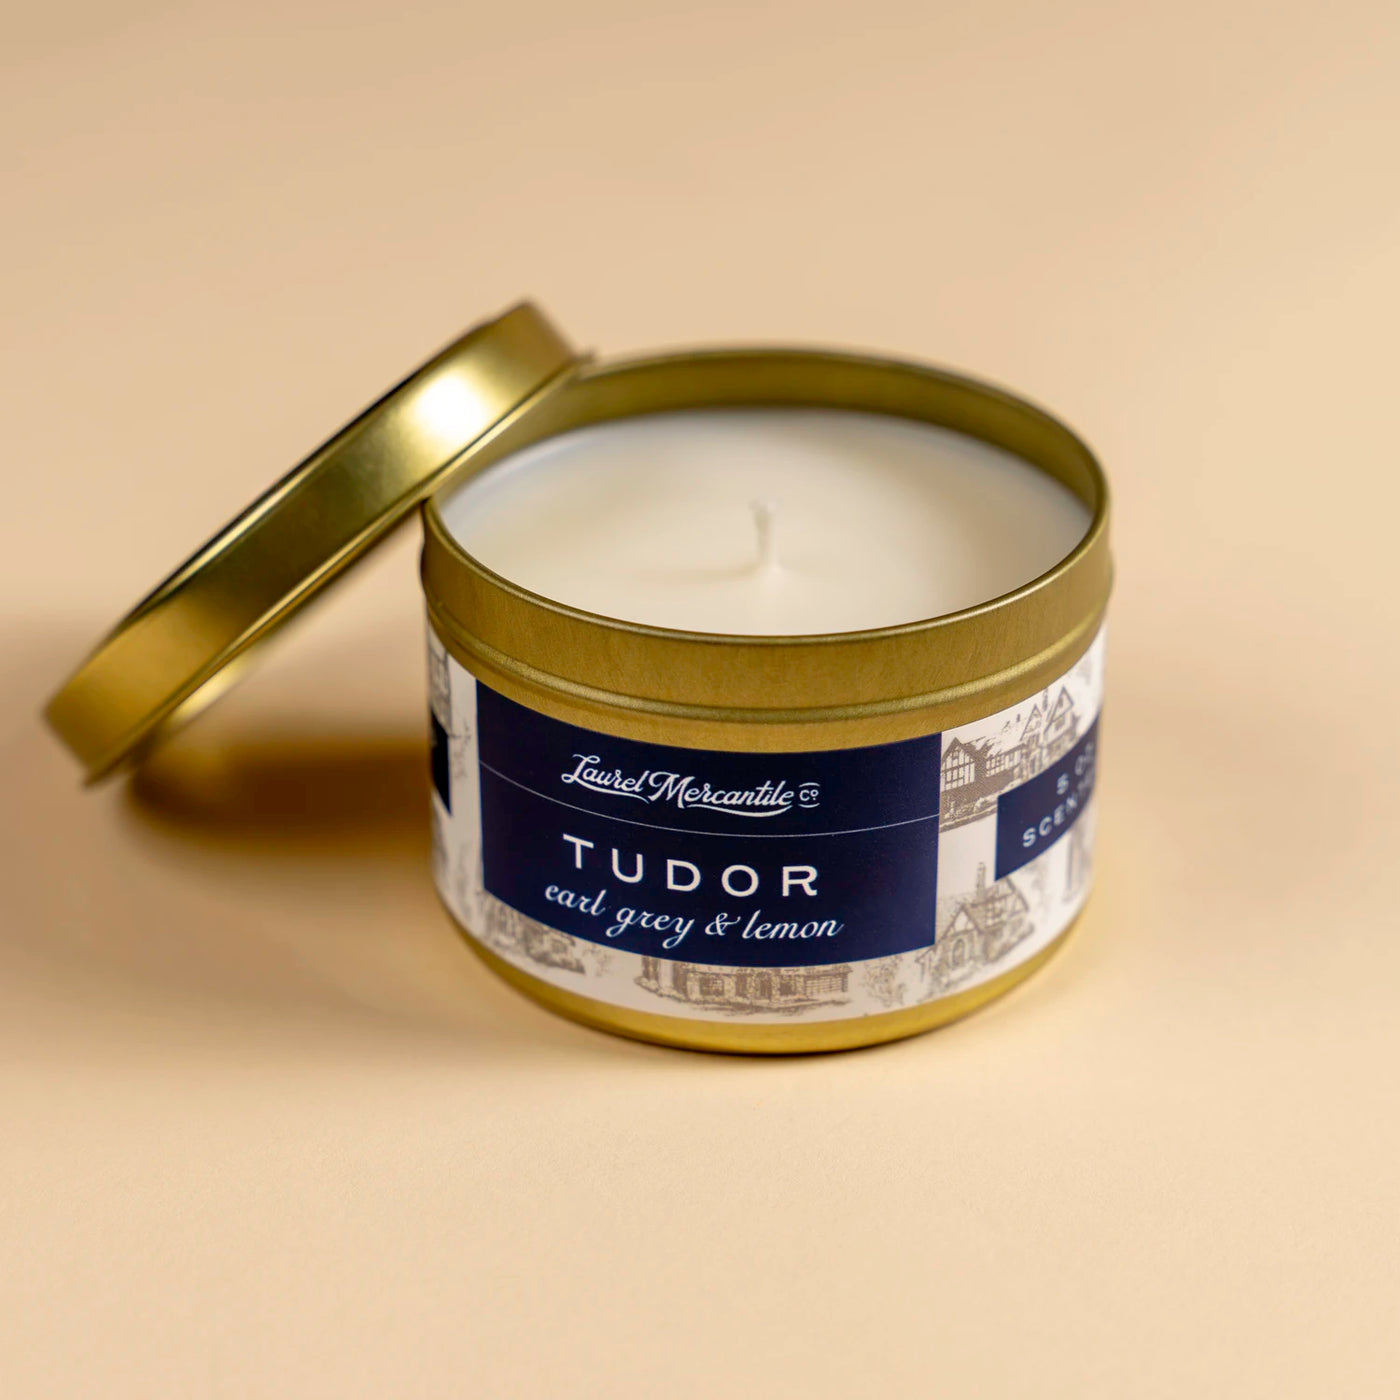 Tudor 5 oz. Candle